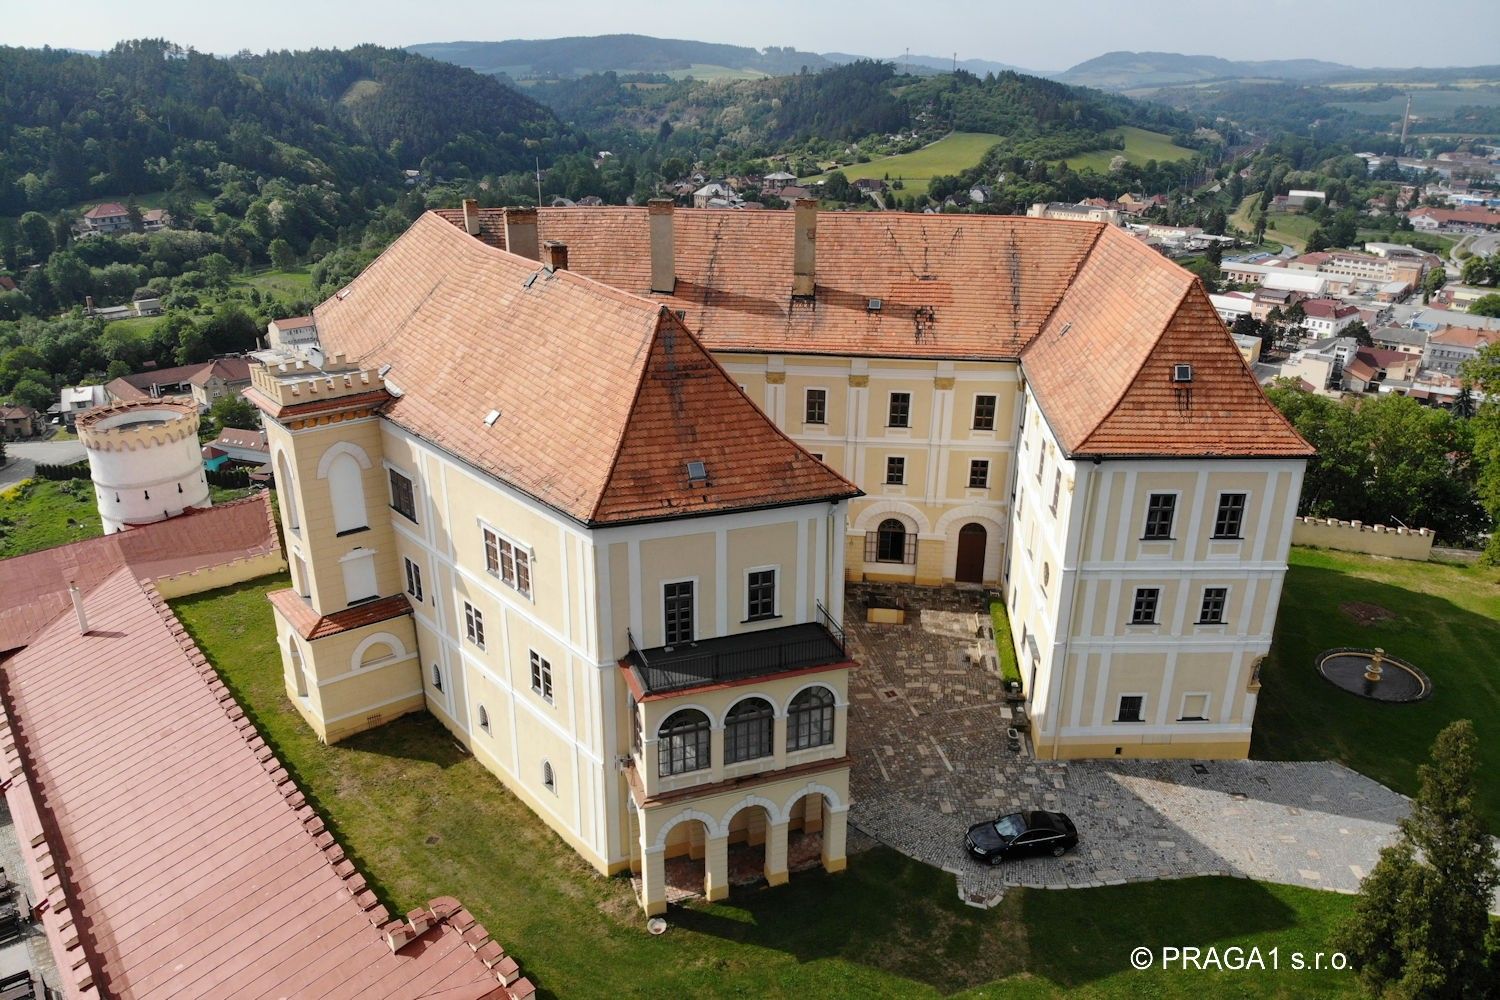 Zdjęcia Duży zamek renesansowy w Czechach